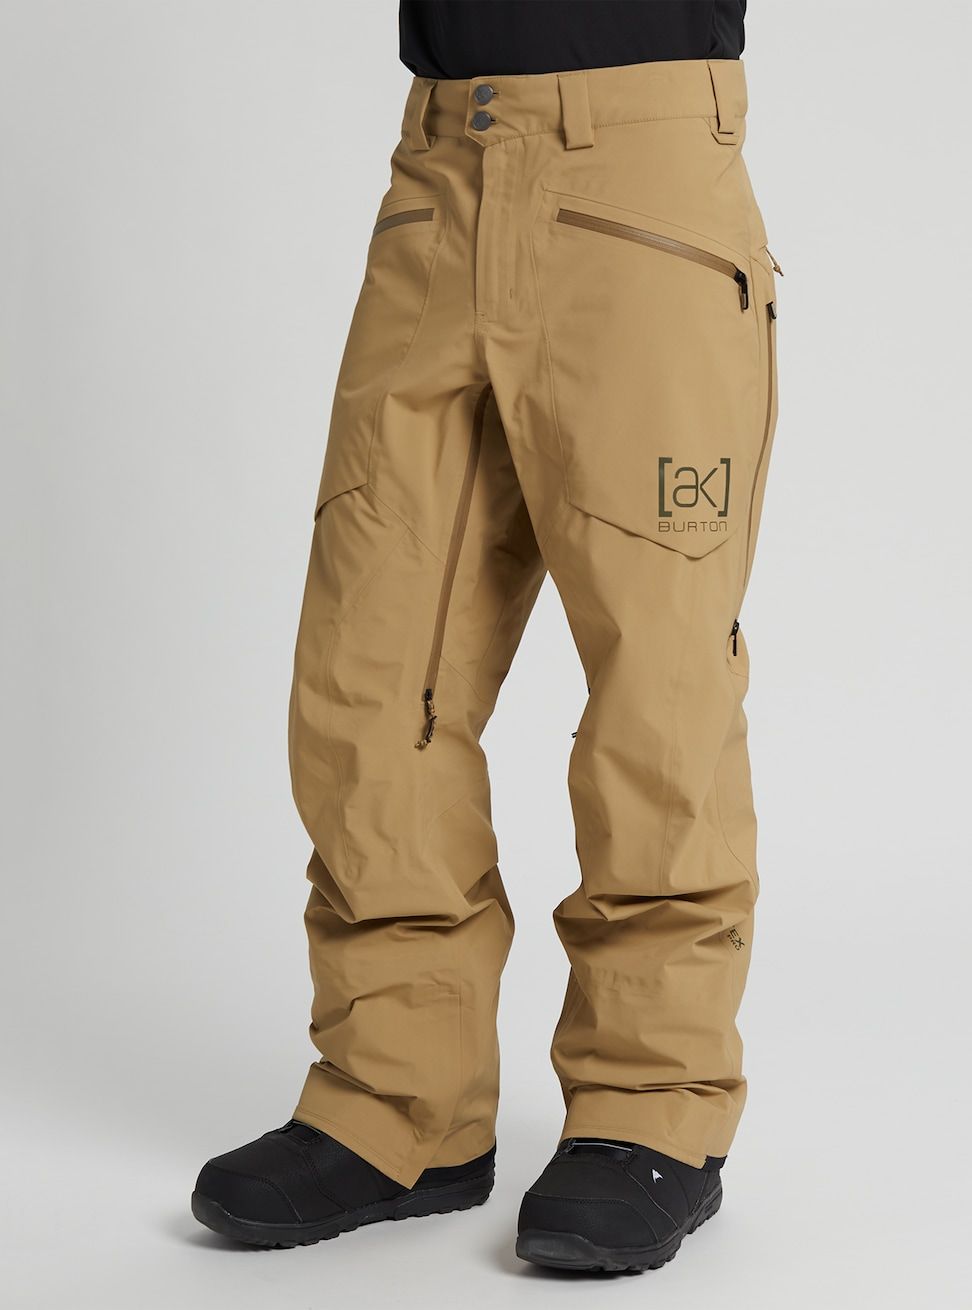 Men's Burton [ak] Hover GORE-TEX PRO 3L Pants – Dreamruns.com